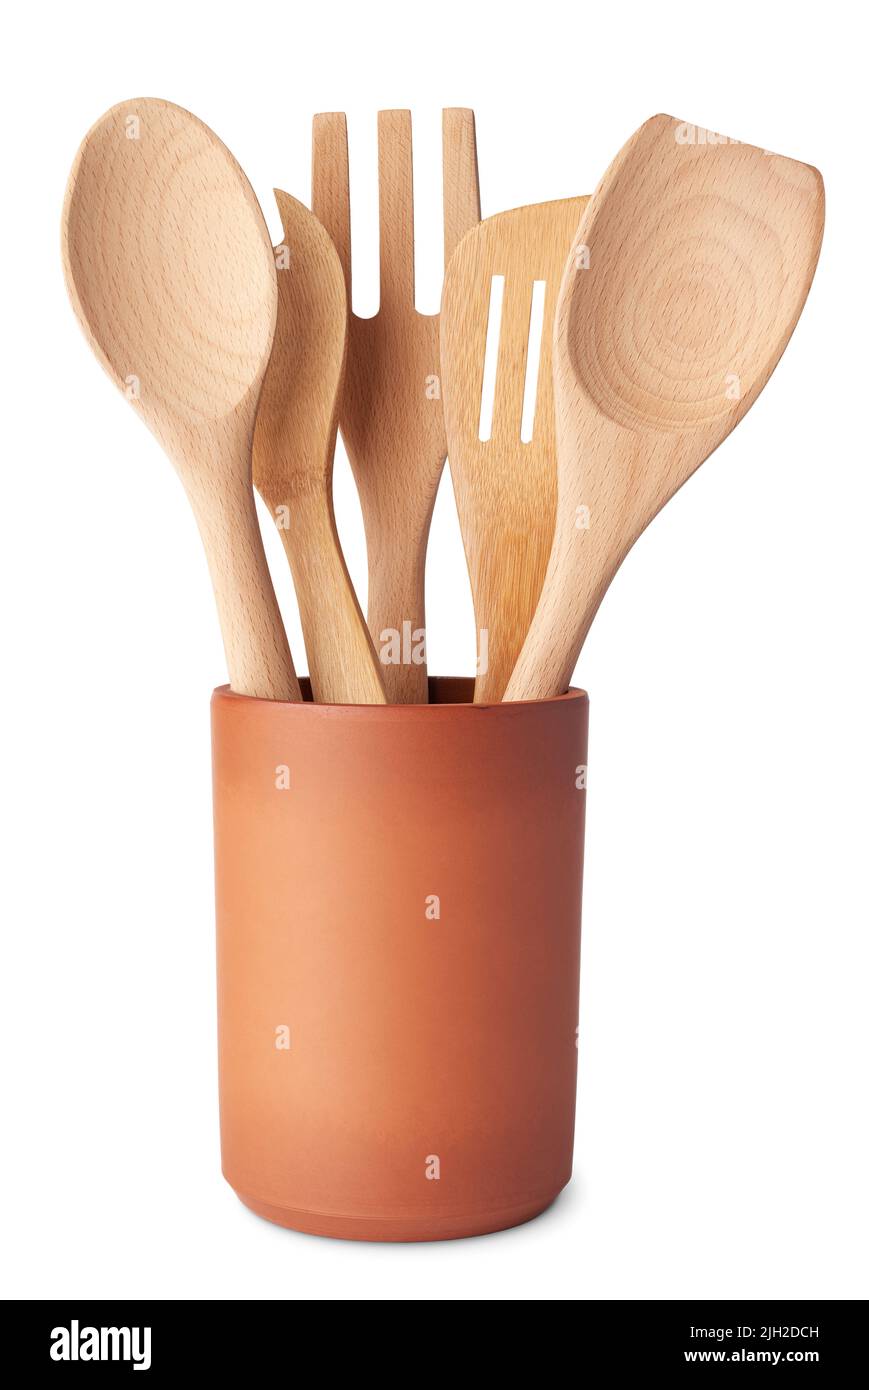 Juego de utensilios de cocina de madera, cuchara, tenedor y espátula, en un recipiente de terracota, aislado sobre fondo blanco Foto de stock